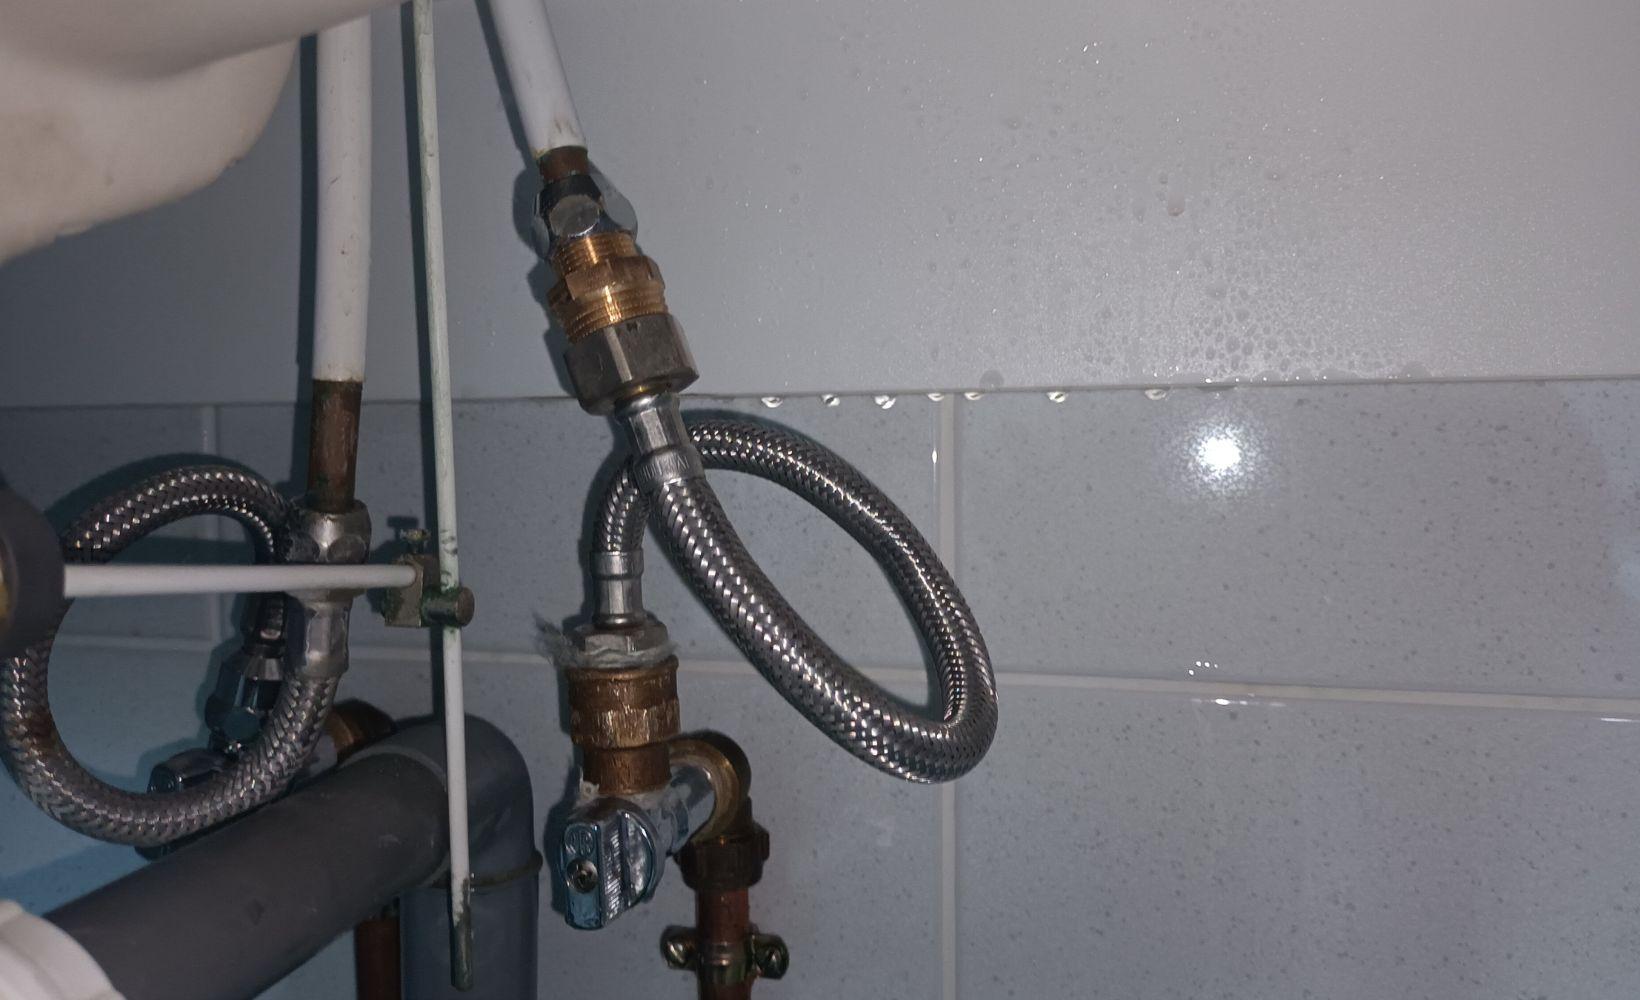 Remplacement du flexible de robinet - Étapes et conseils